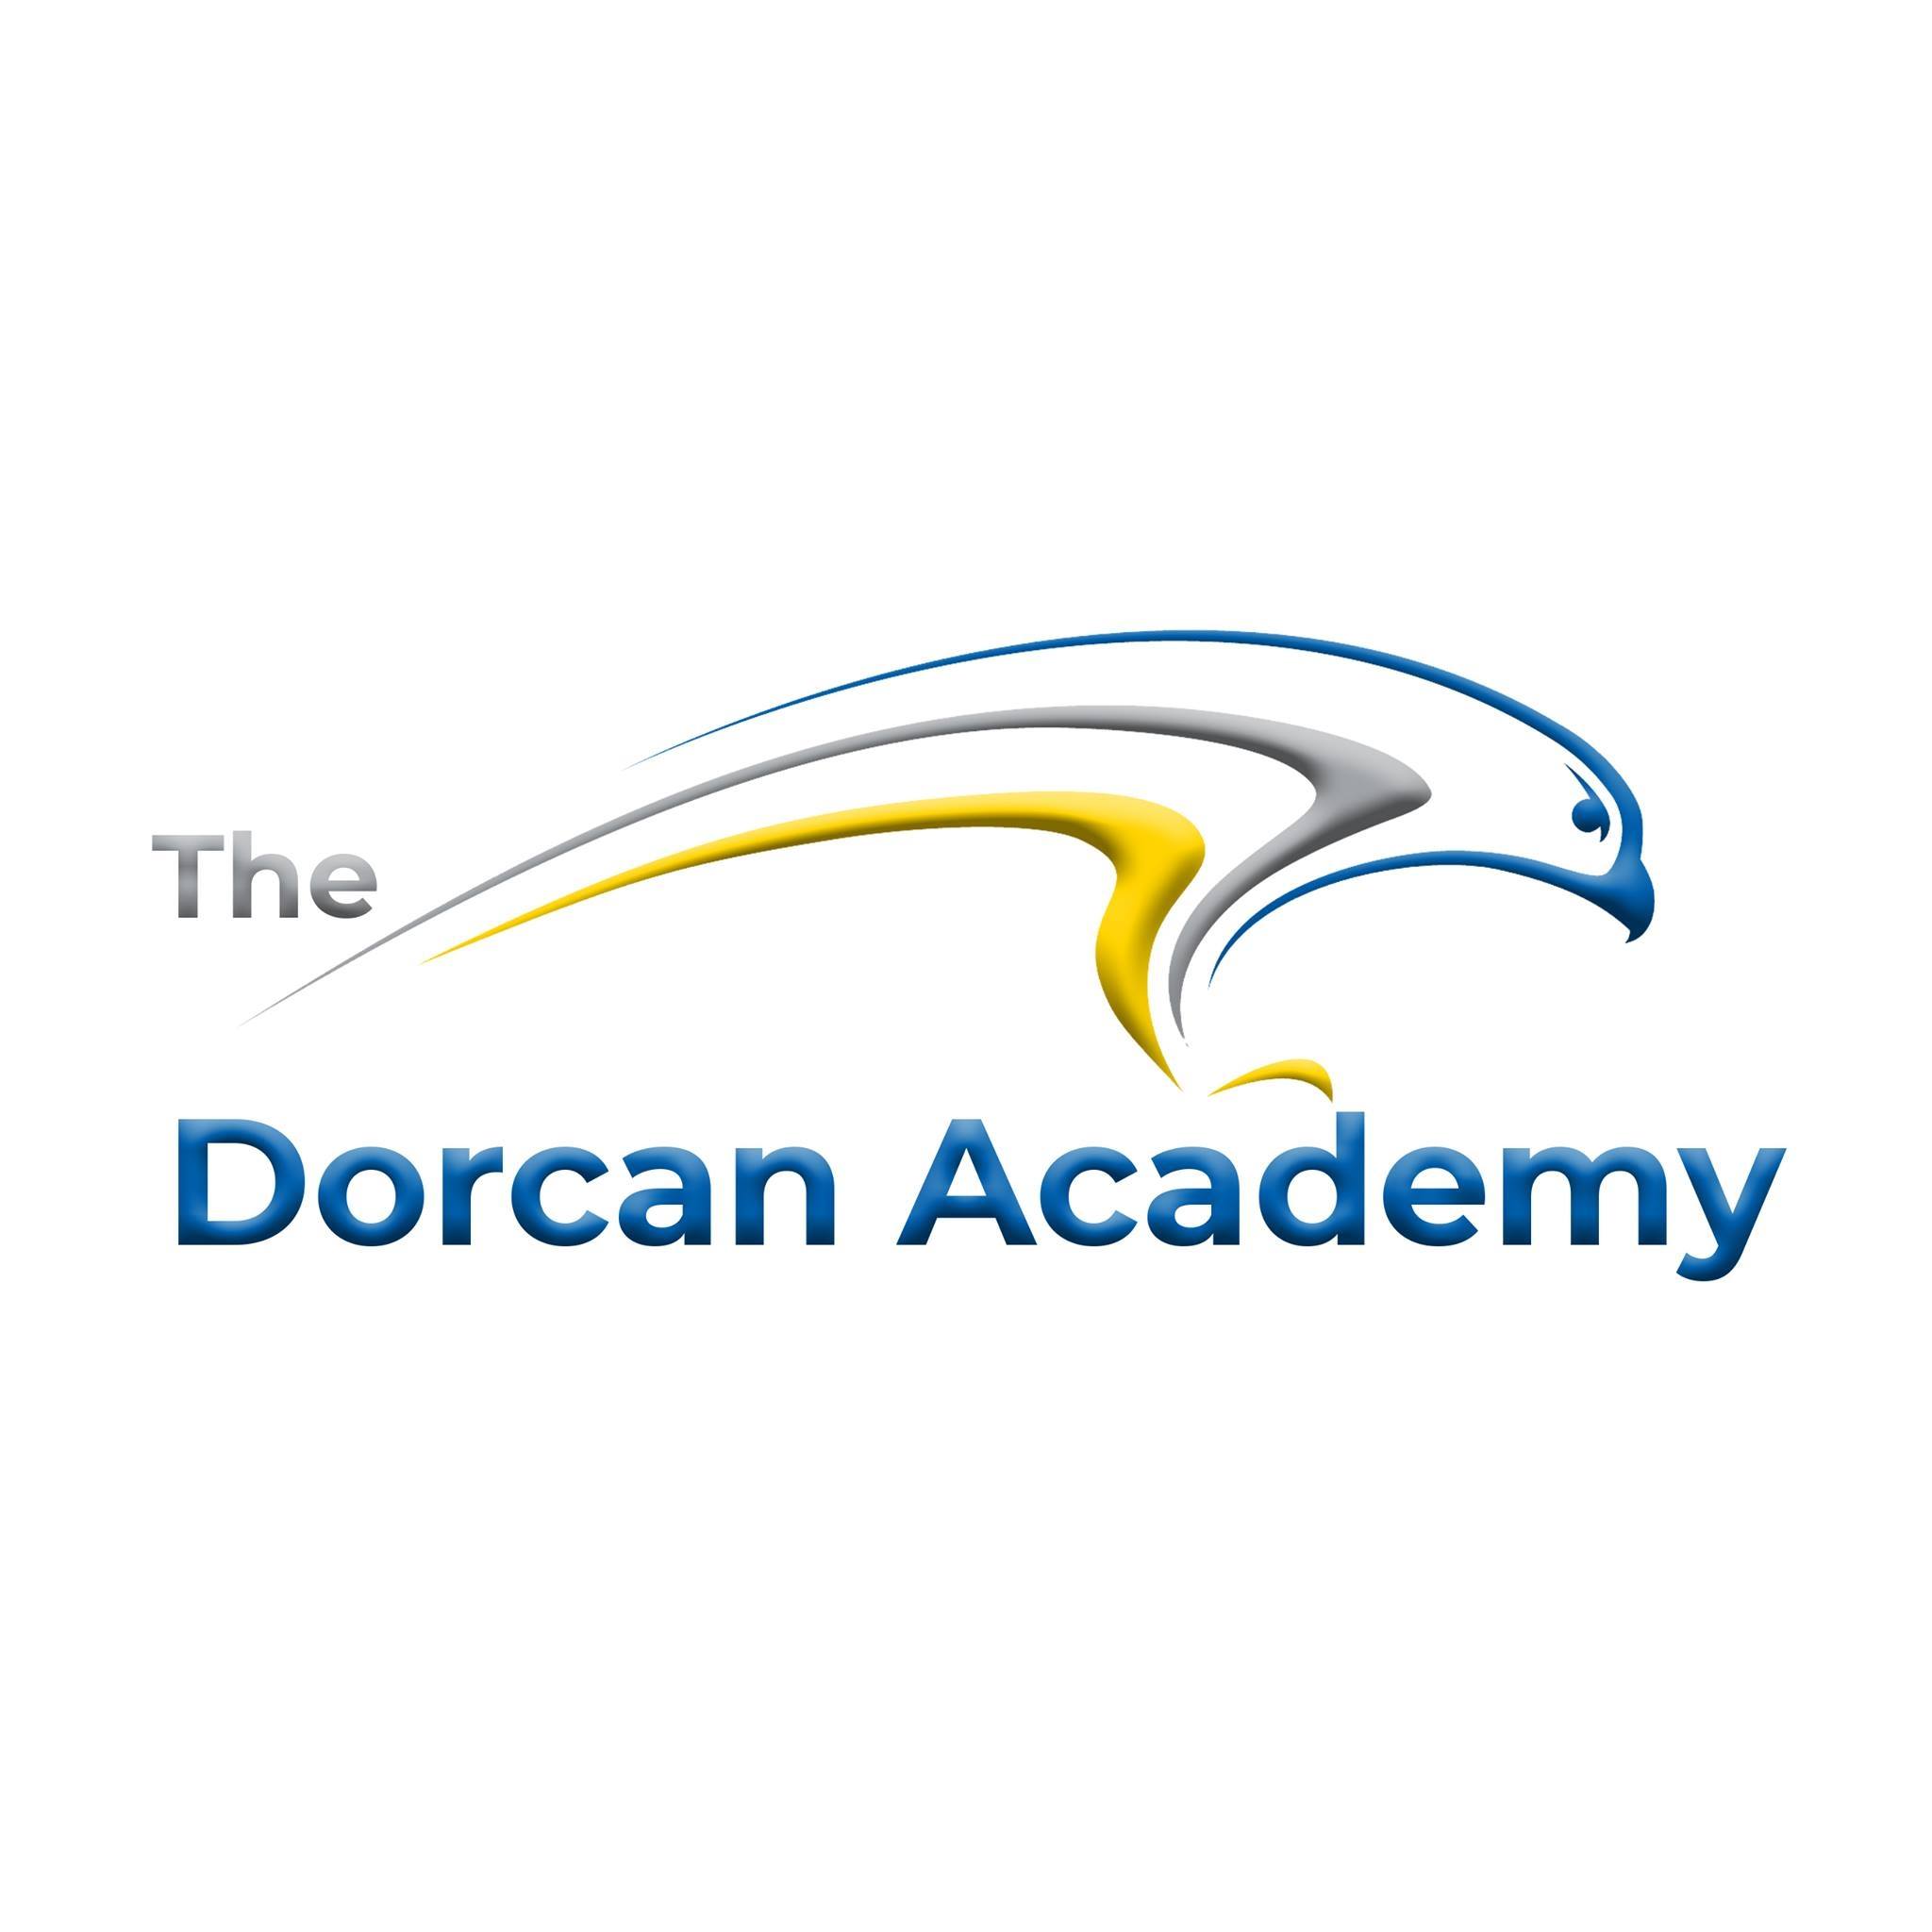 The Dorcan Academy校徽